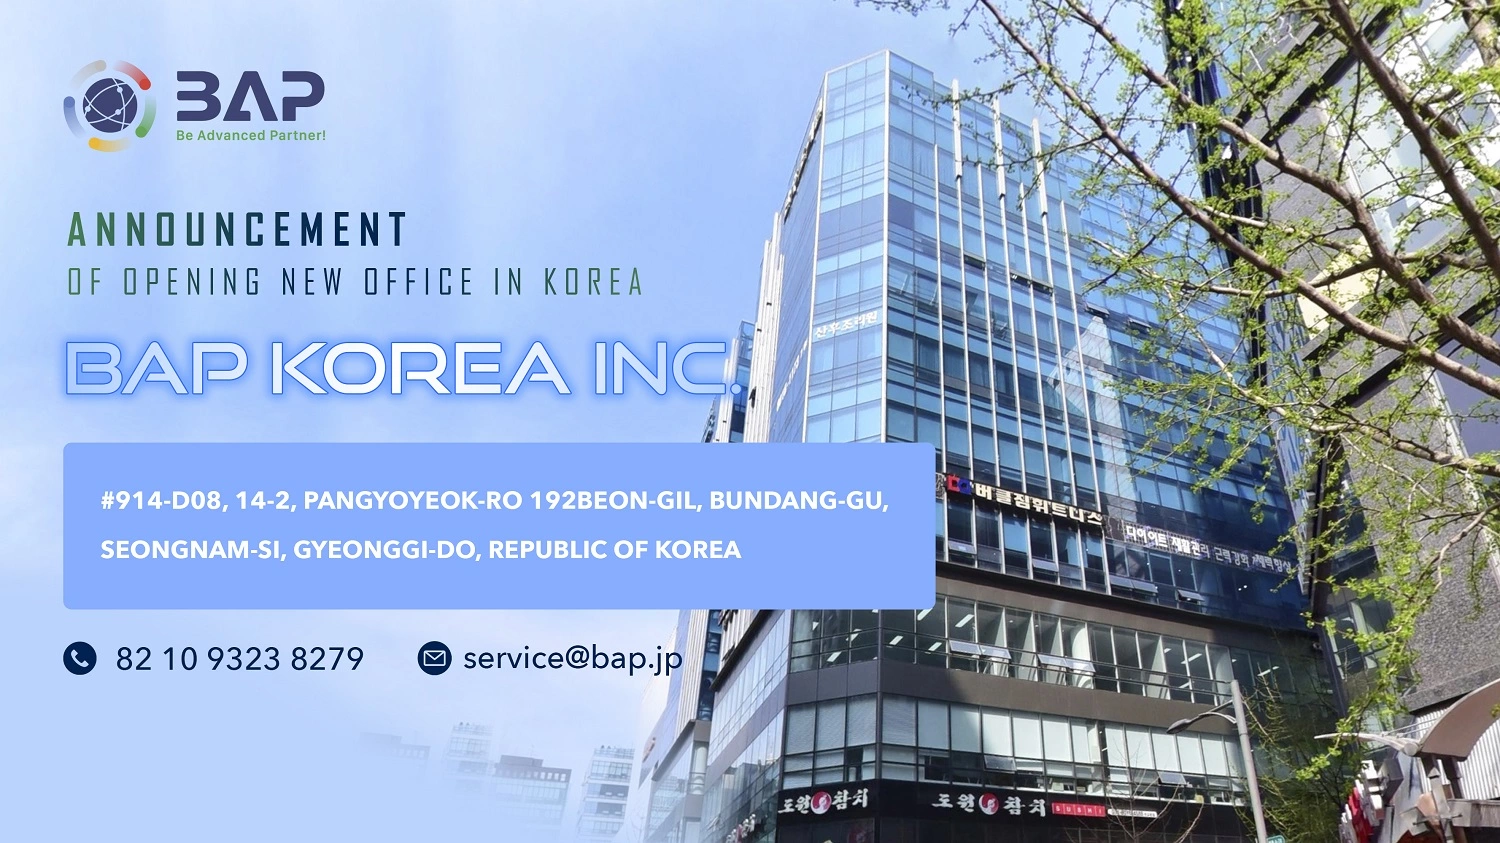 株式会社BAP KOREA – 韓国オフィス設立についてのお知らせ